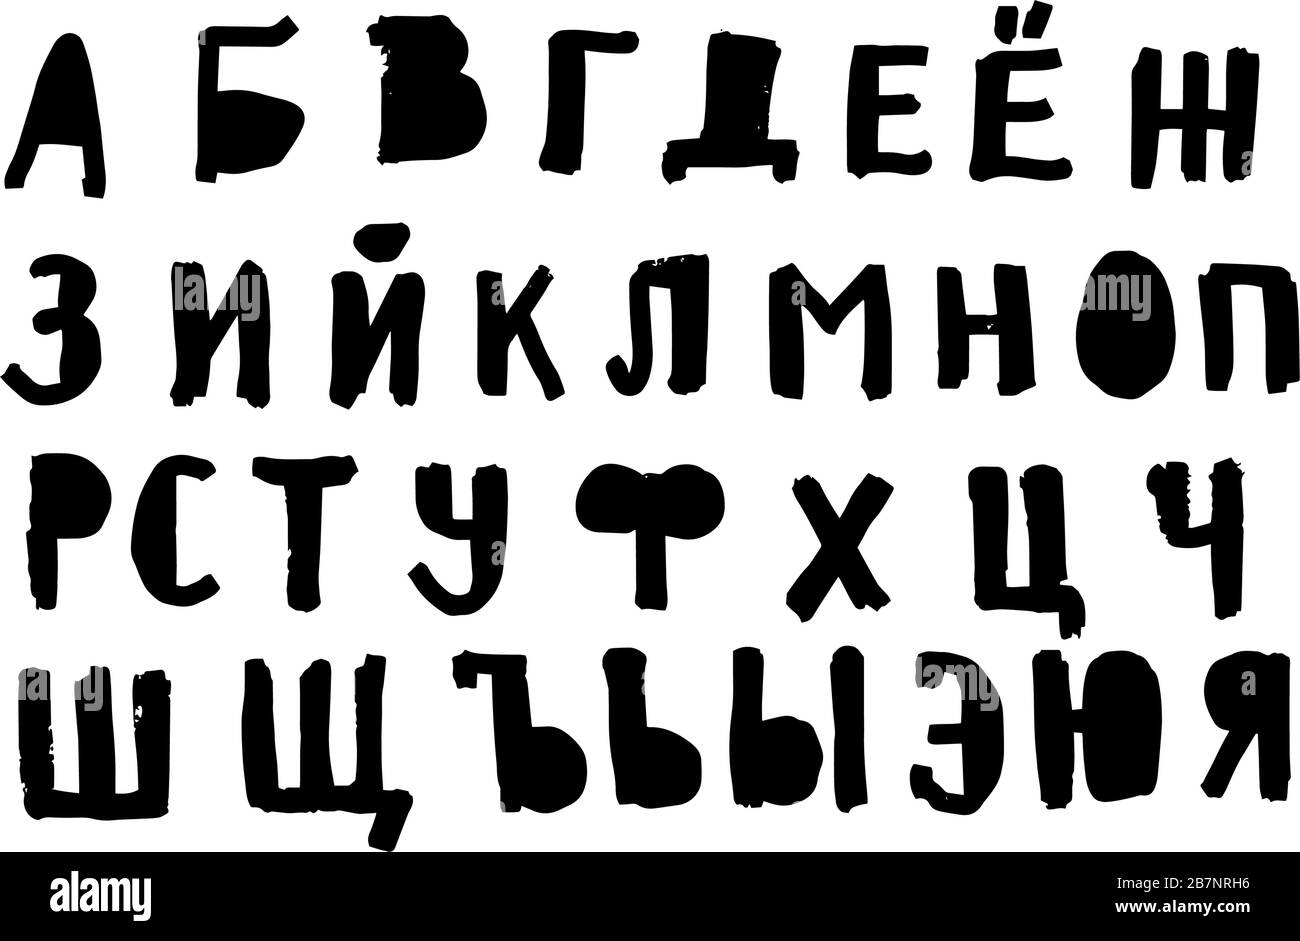 Alfabeto cirillico immagini e fotografie stock ad alta risoluzione - Alamy